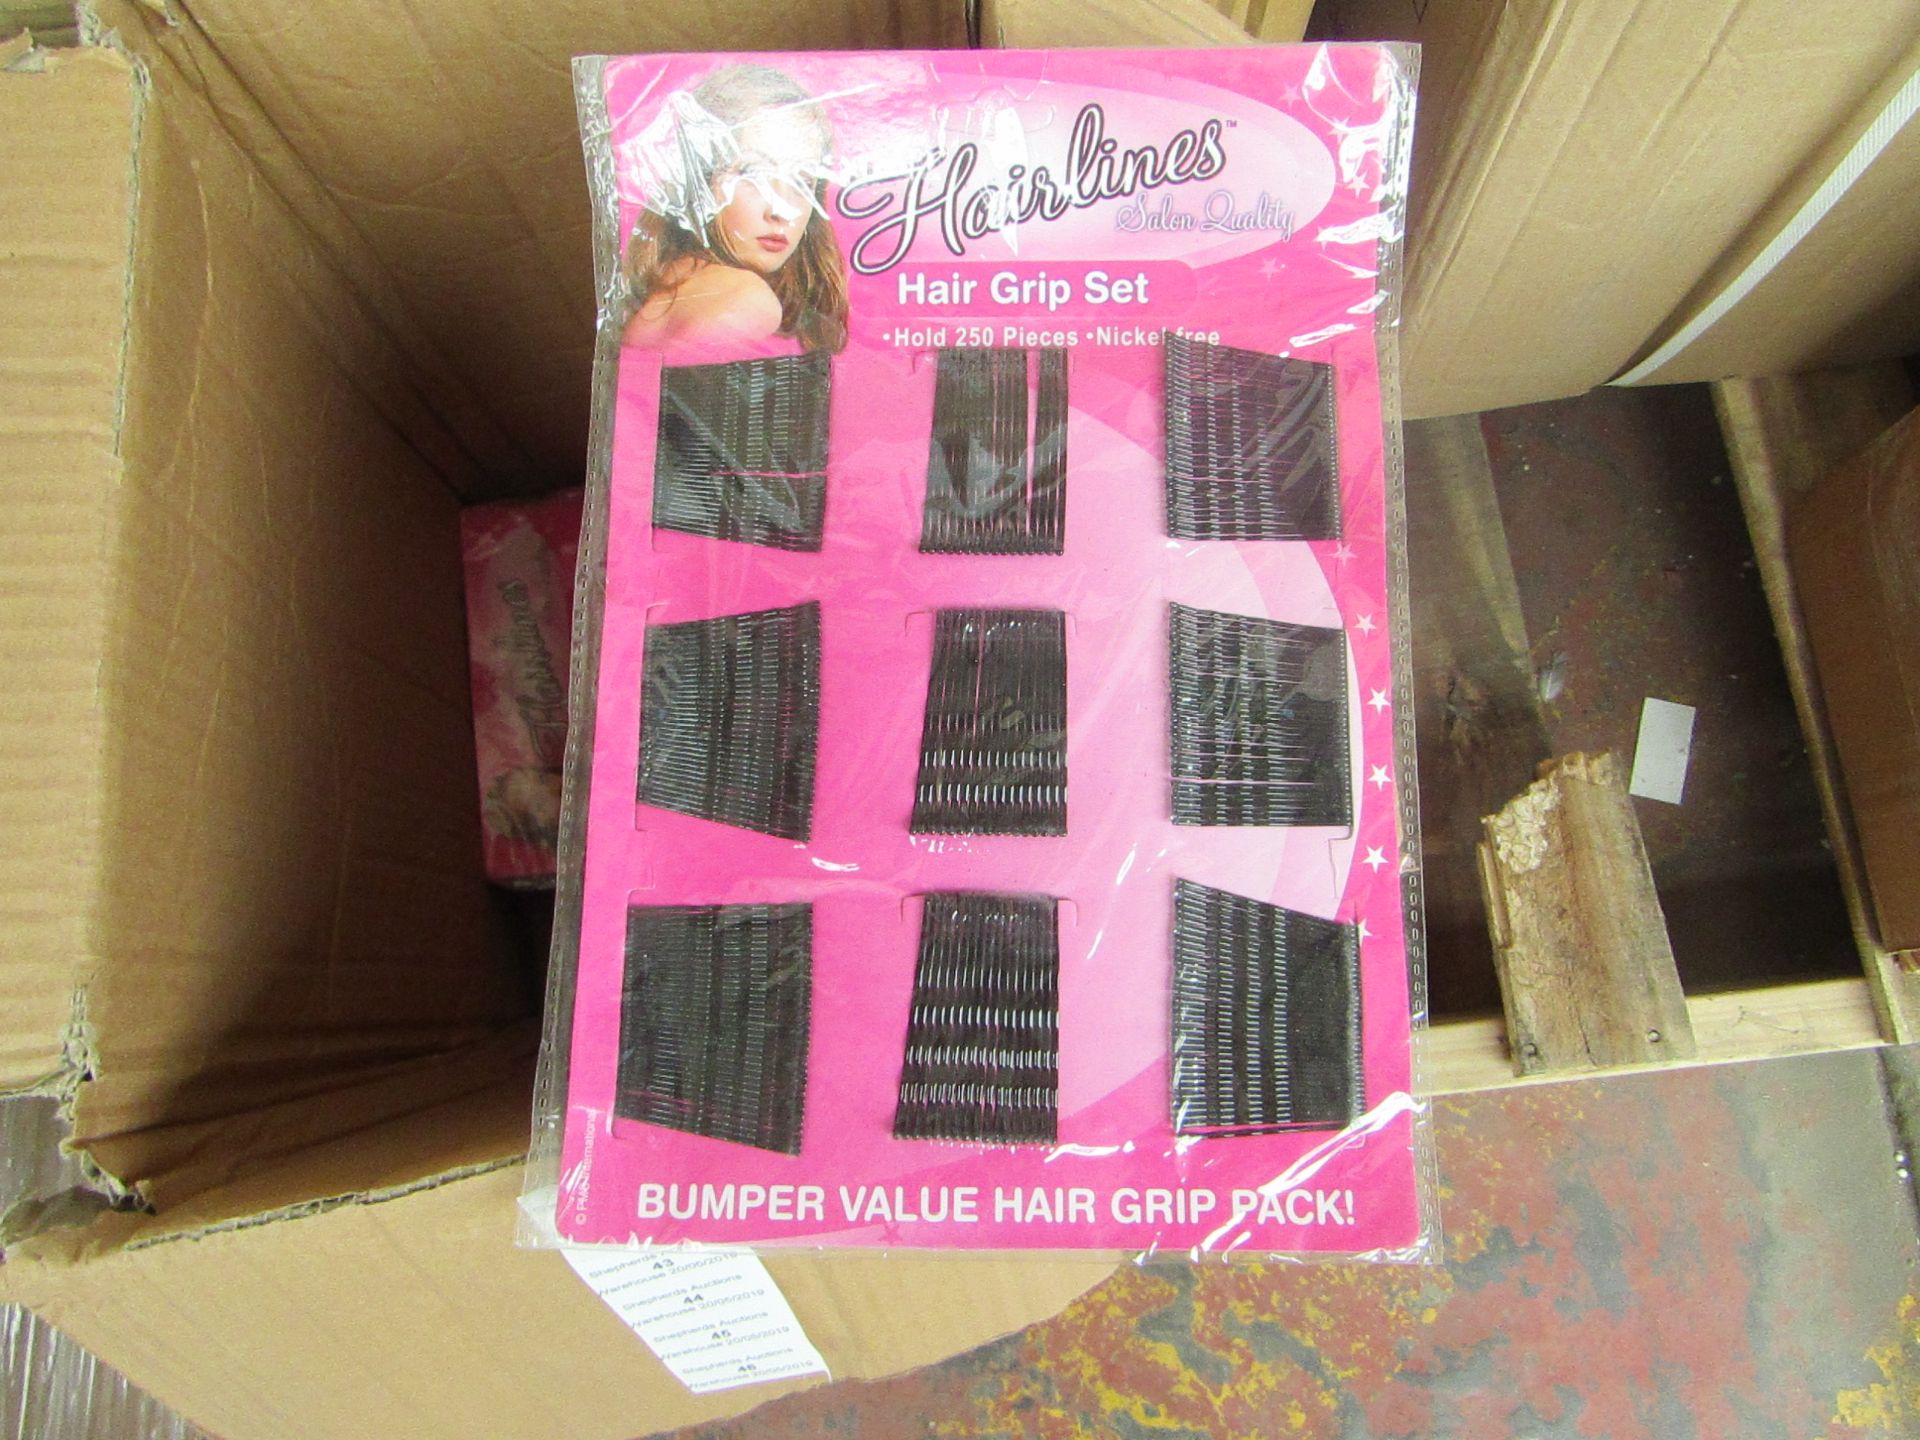 Hairlines Hair Grip Set 250pcs Nickle Free, in Packaging